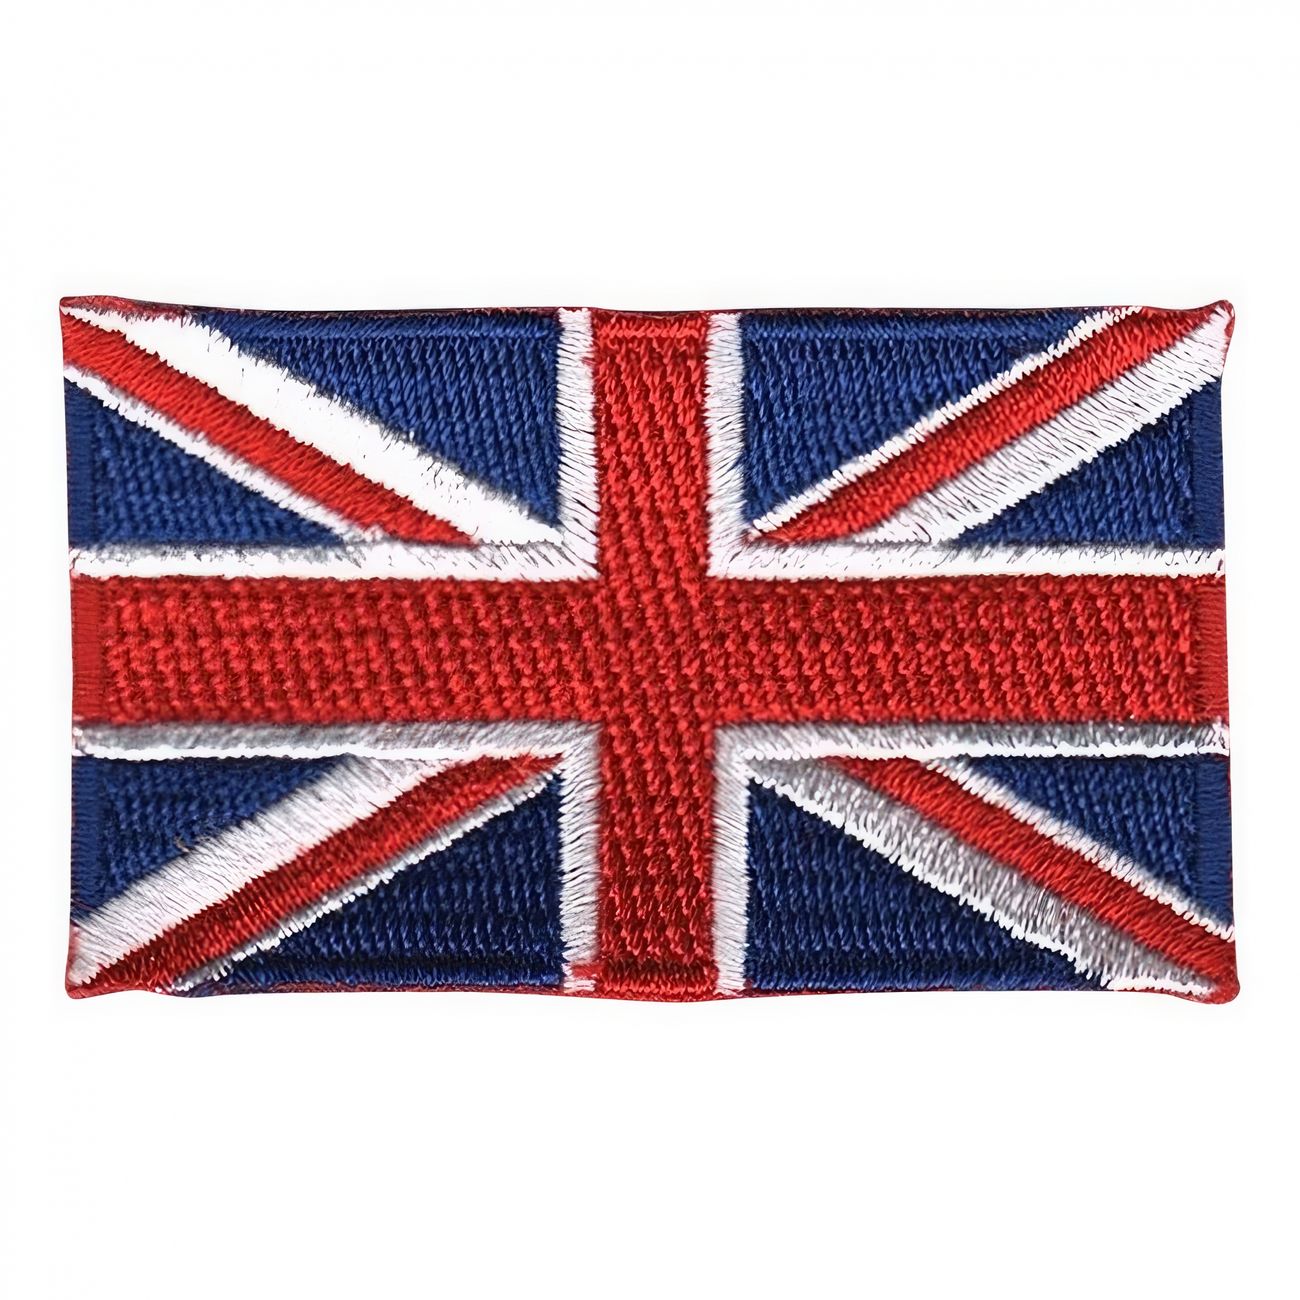 tygmarke-flagga-storbritannien-94179-1